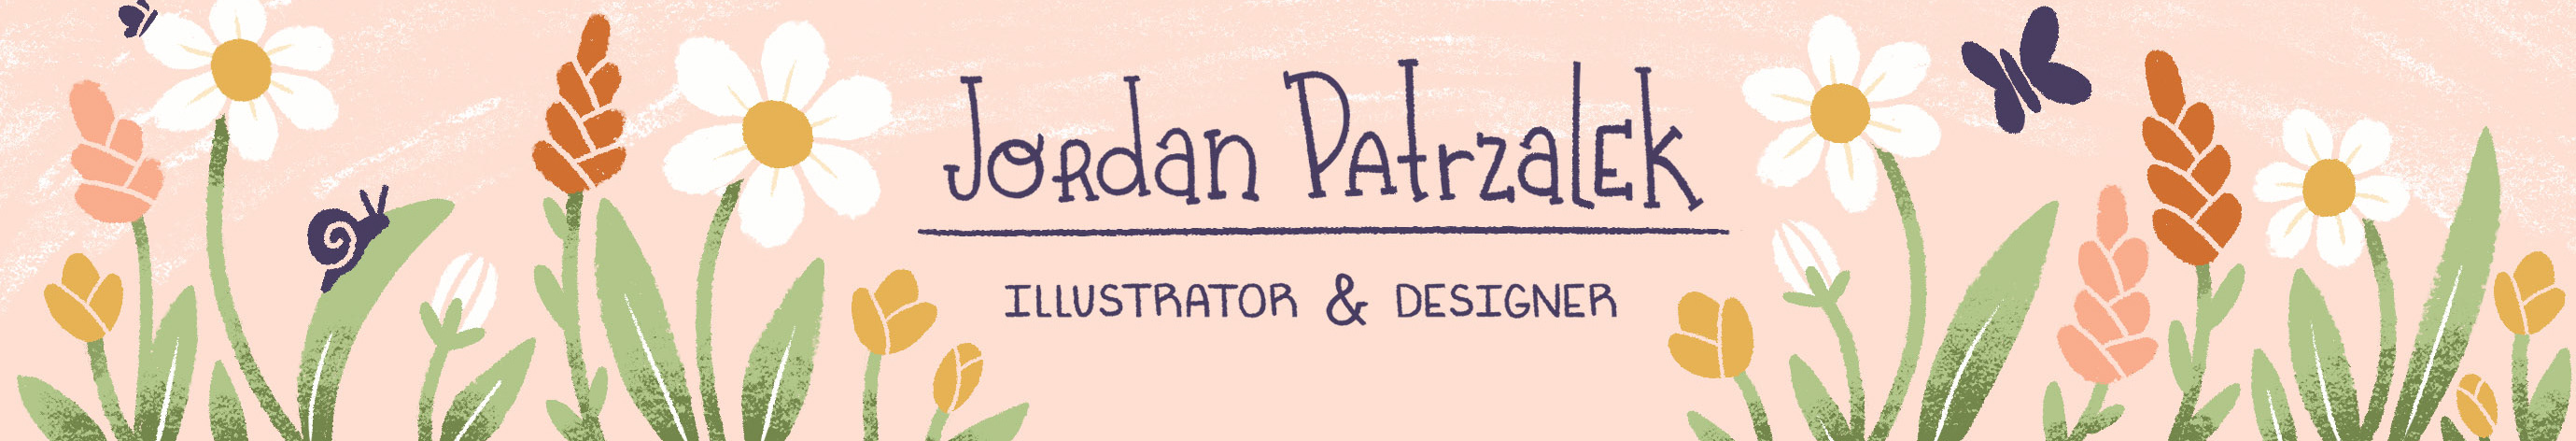 Jordan Patrzalek's profile banner